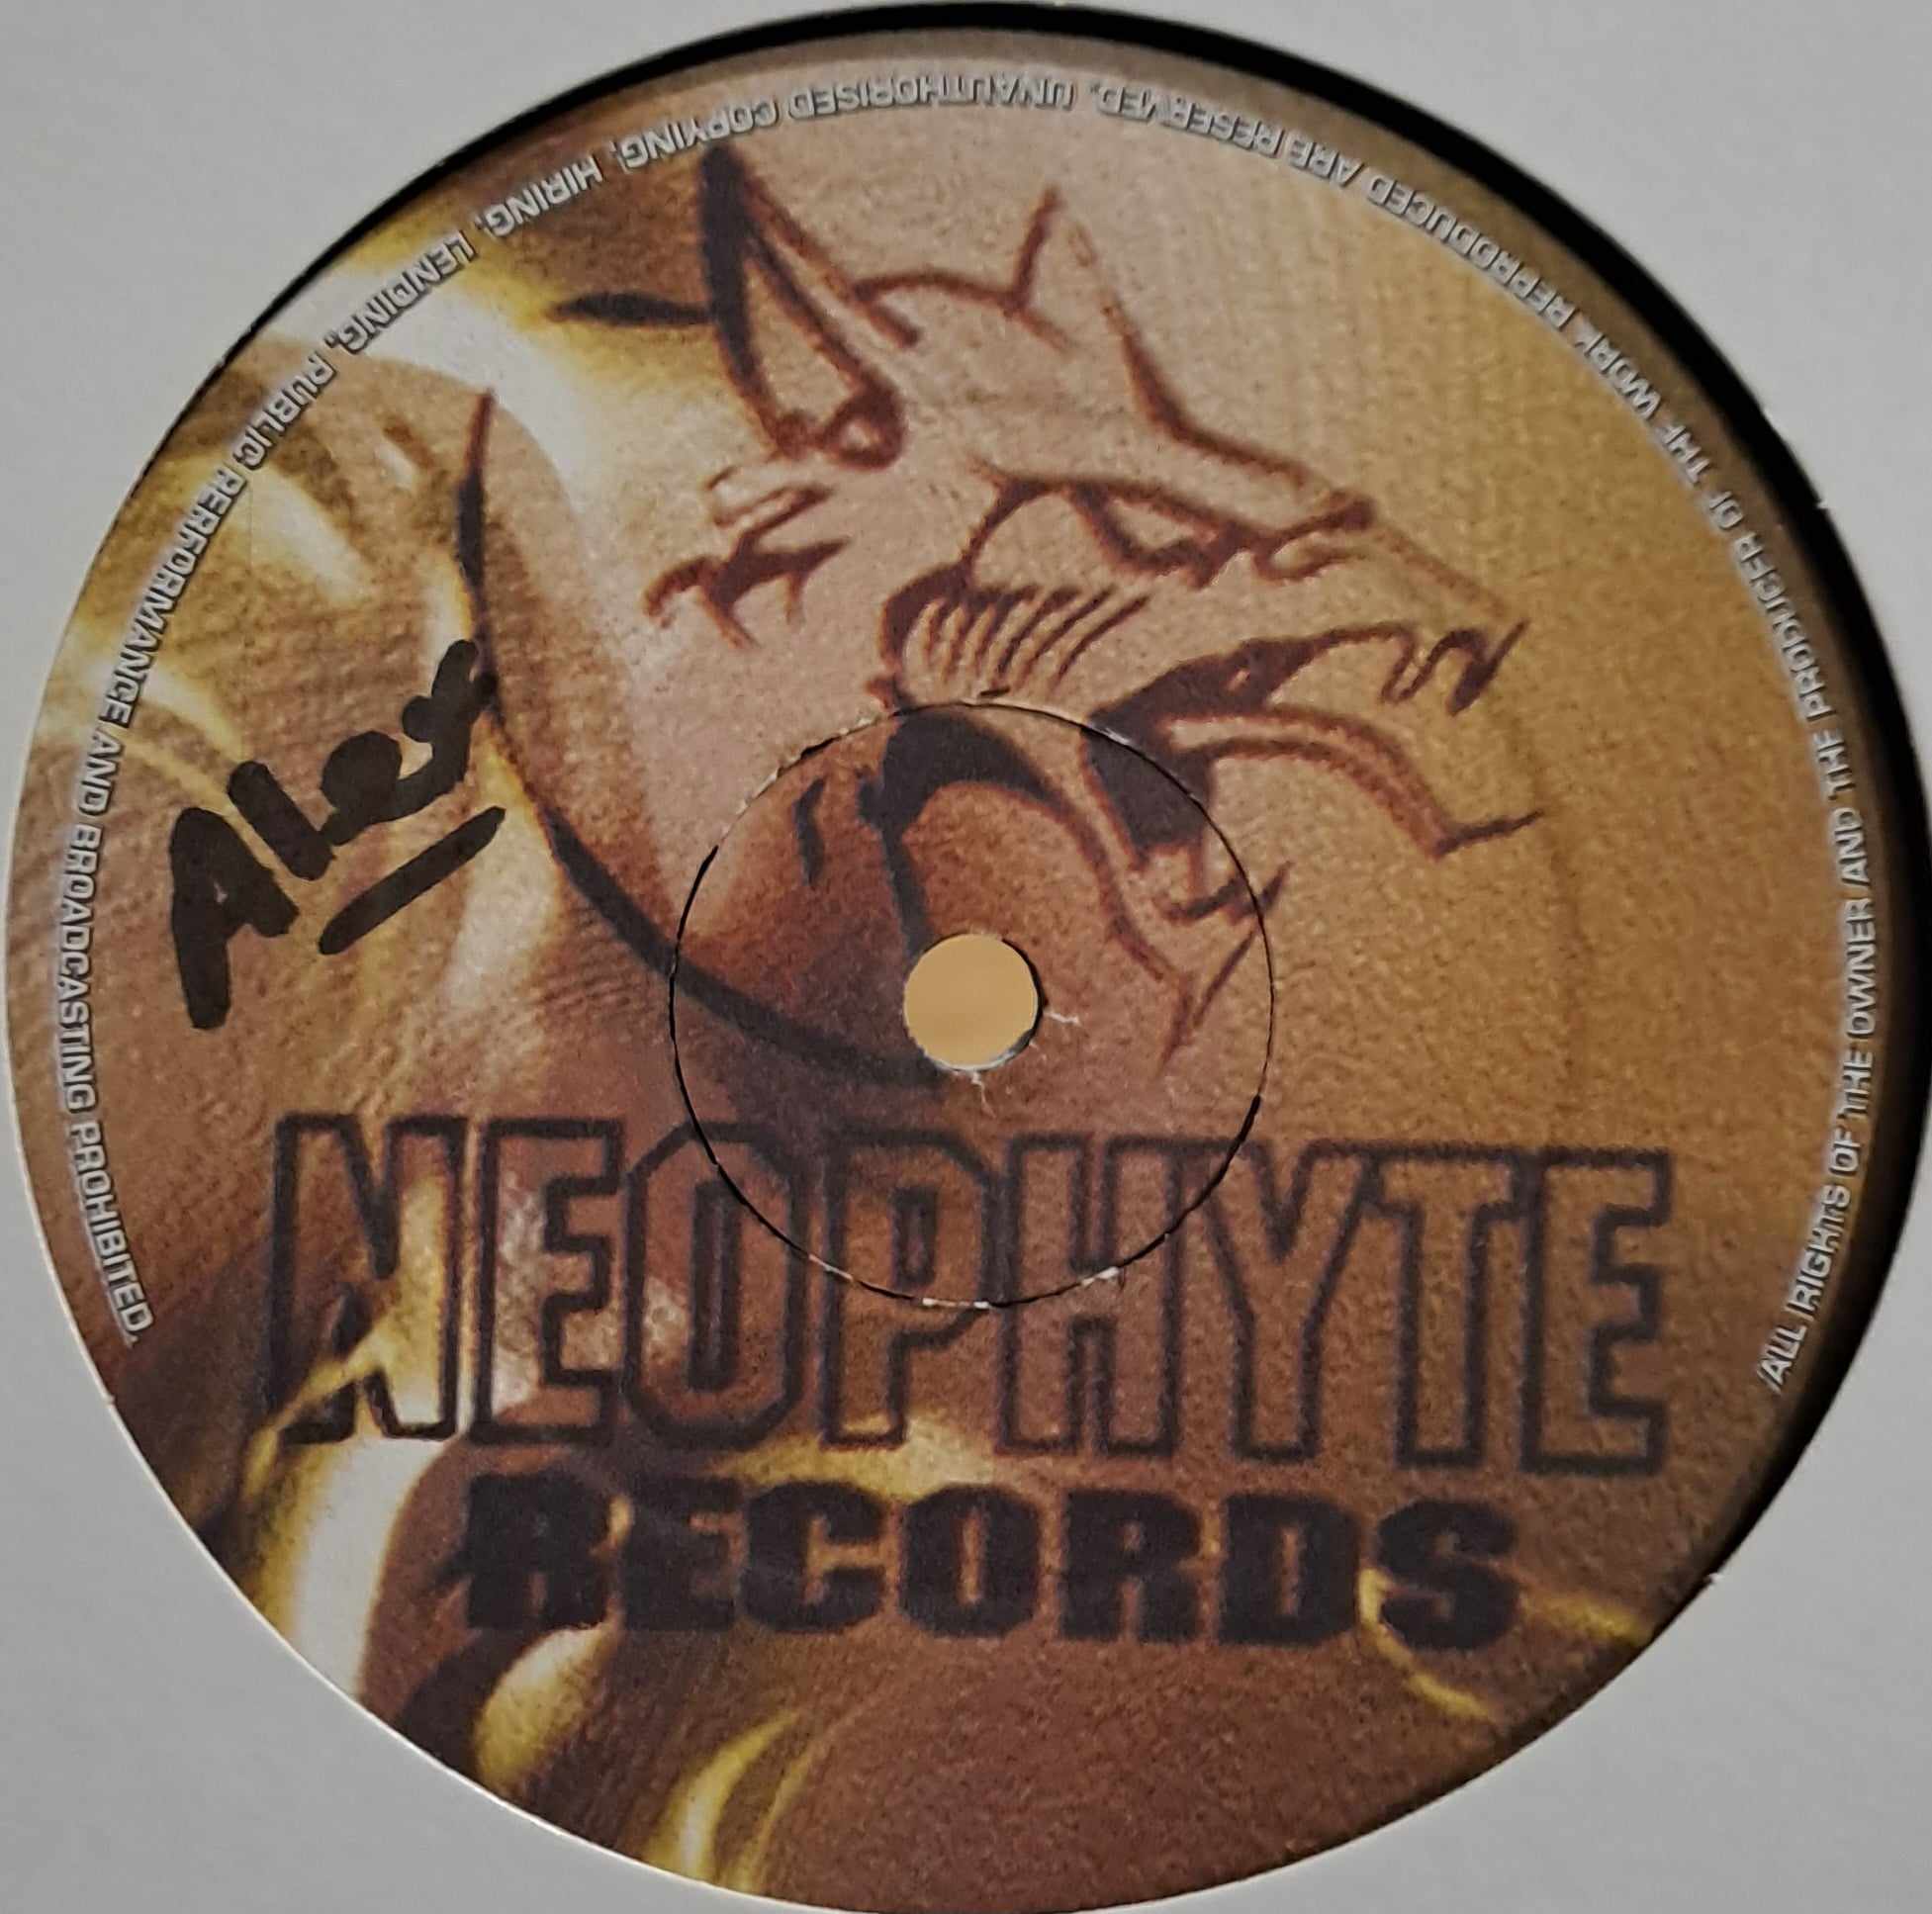 Neophyte 005 - vinyle gabber